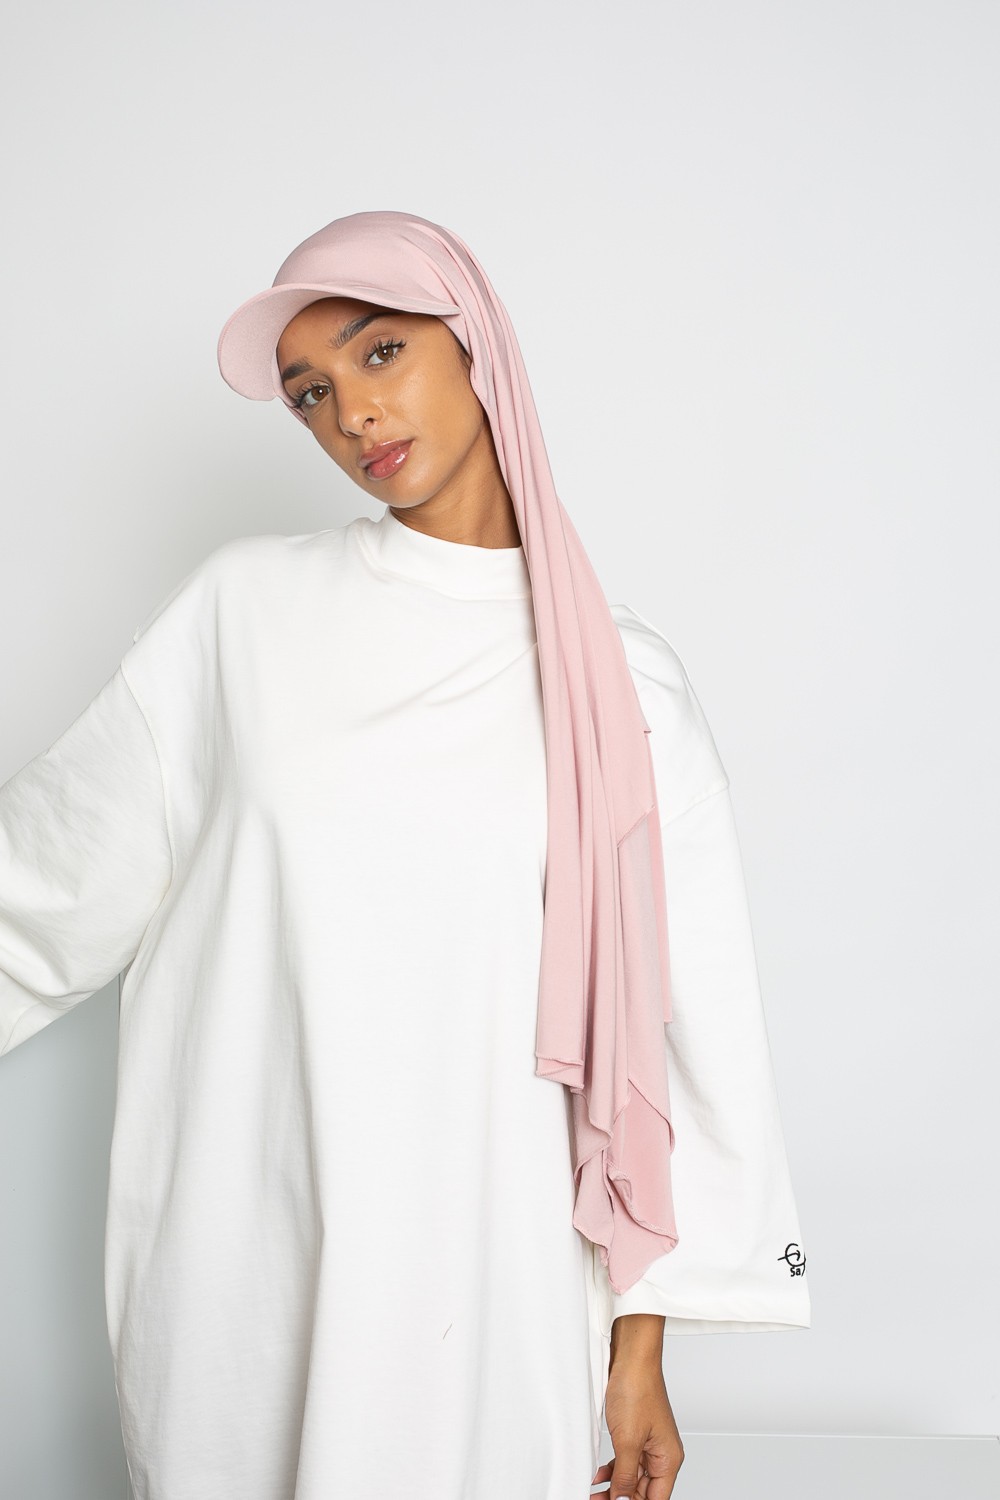 casquette hijab boutique femme musulmane